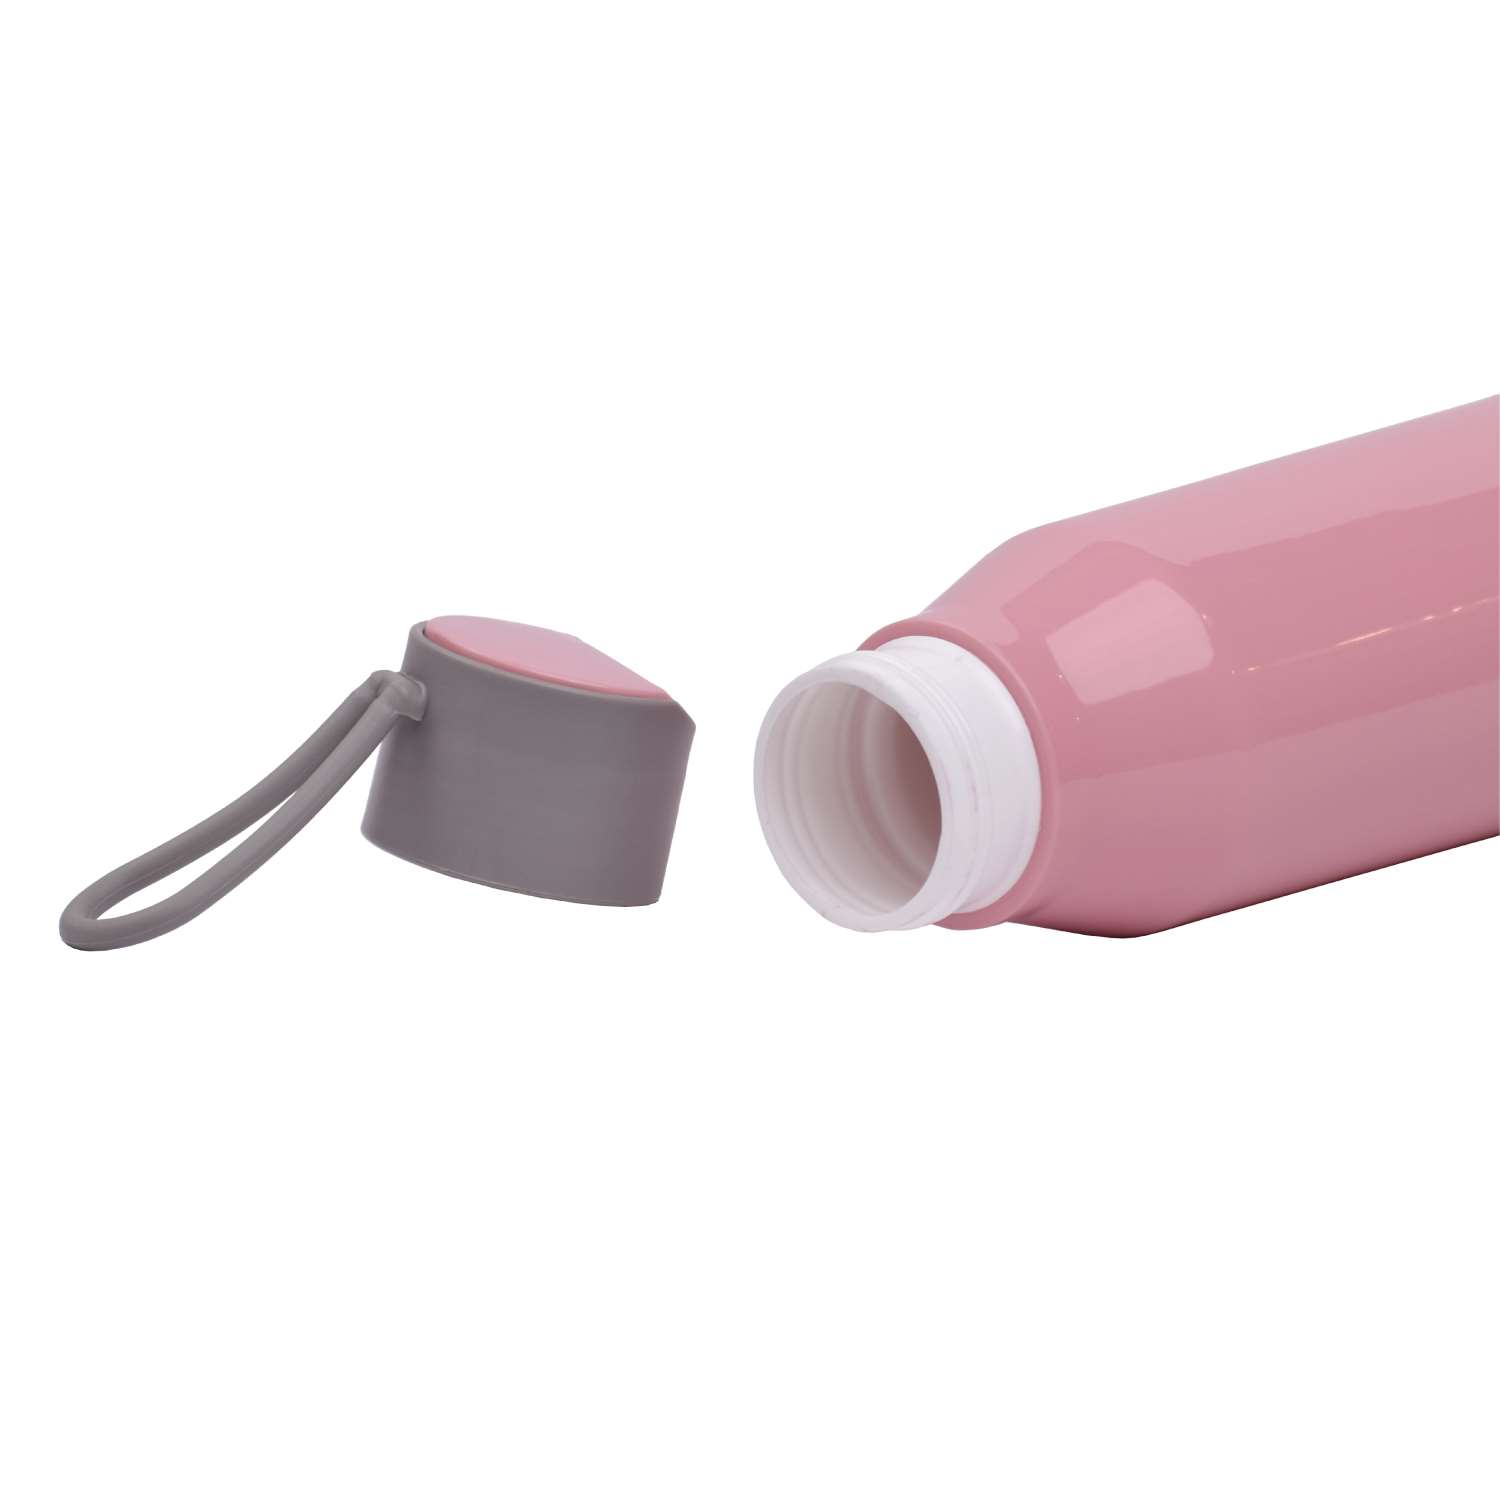 Selvel Bolt Plastic Water Bottle Pink 700Ml